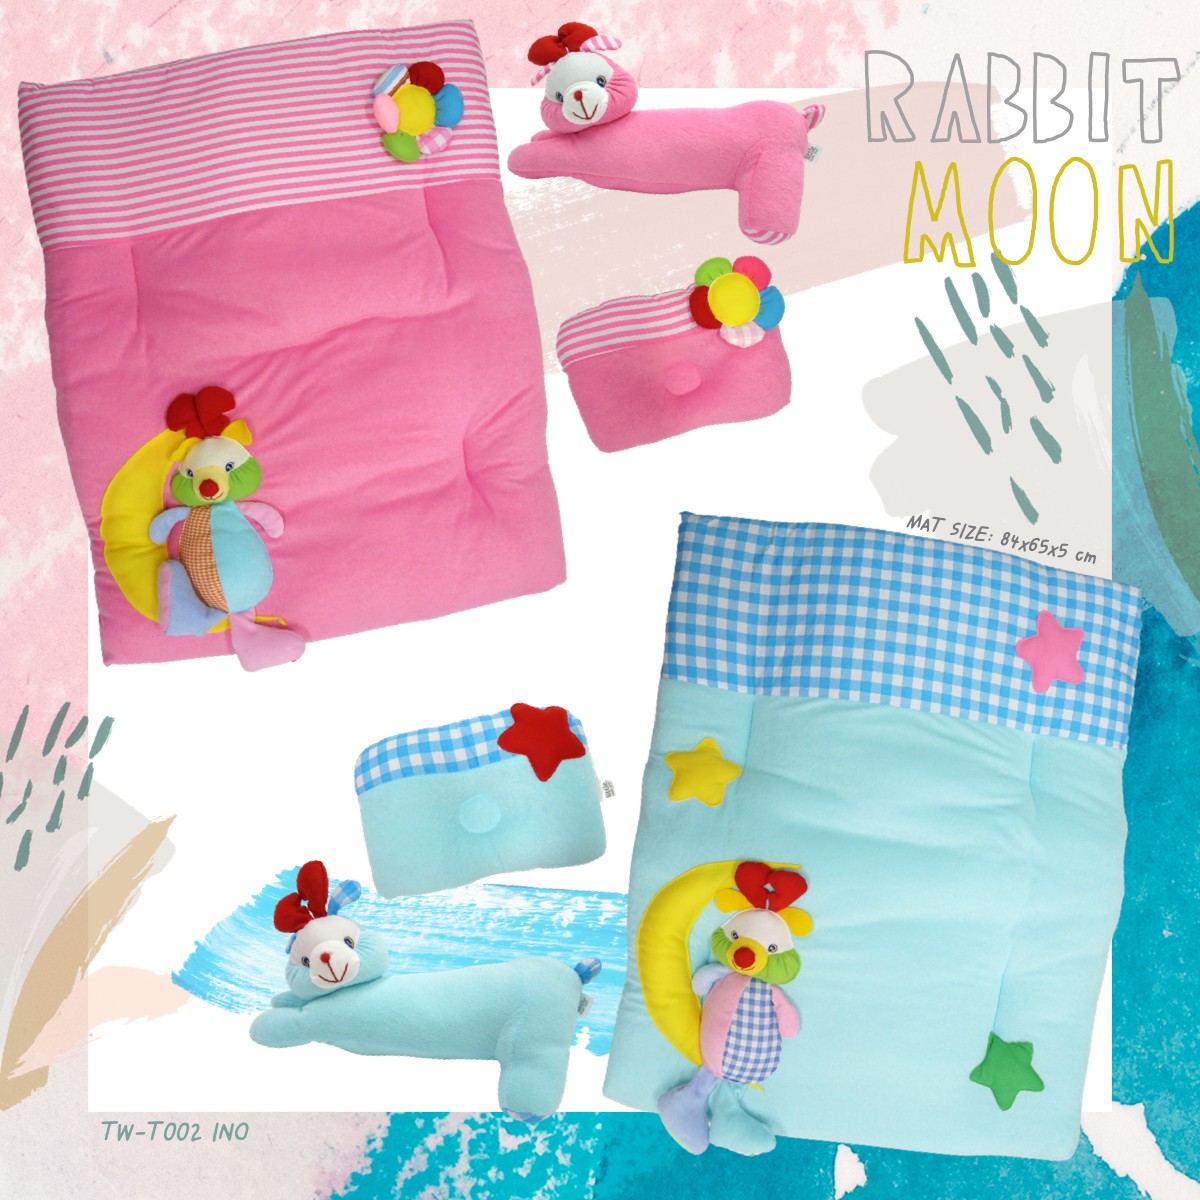 Baby Bed set - Rabbit Moon